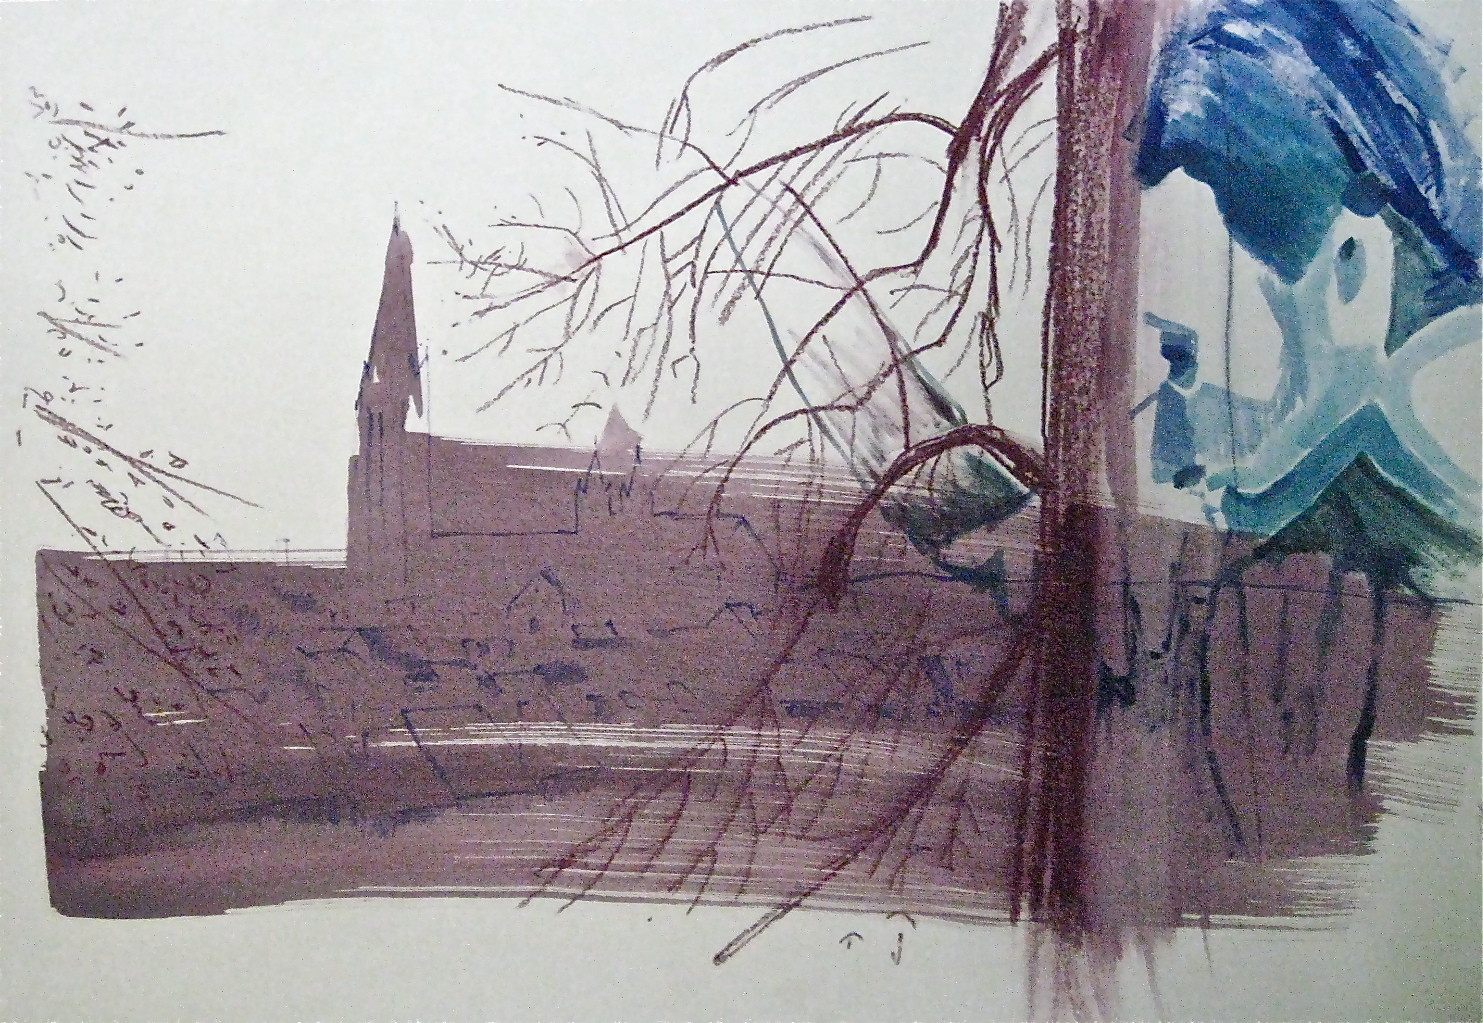 FREIBURG BETRACHTEN NO. 2, 2012, Johannes Morten,  70x100 cm, Aquarell, Acryl und Ölkreide auf Finnpappe